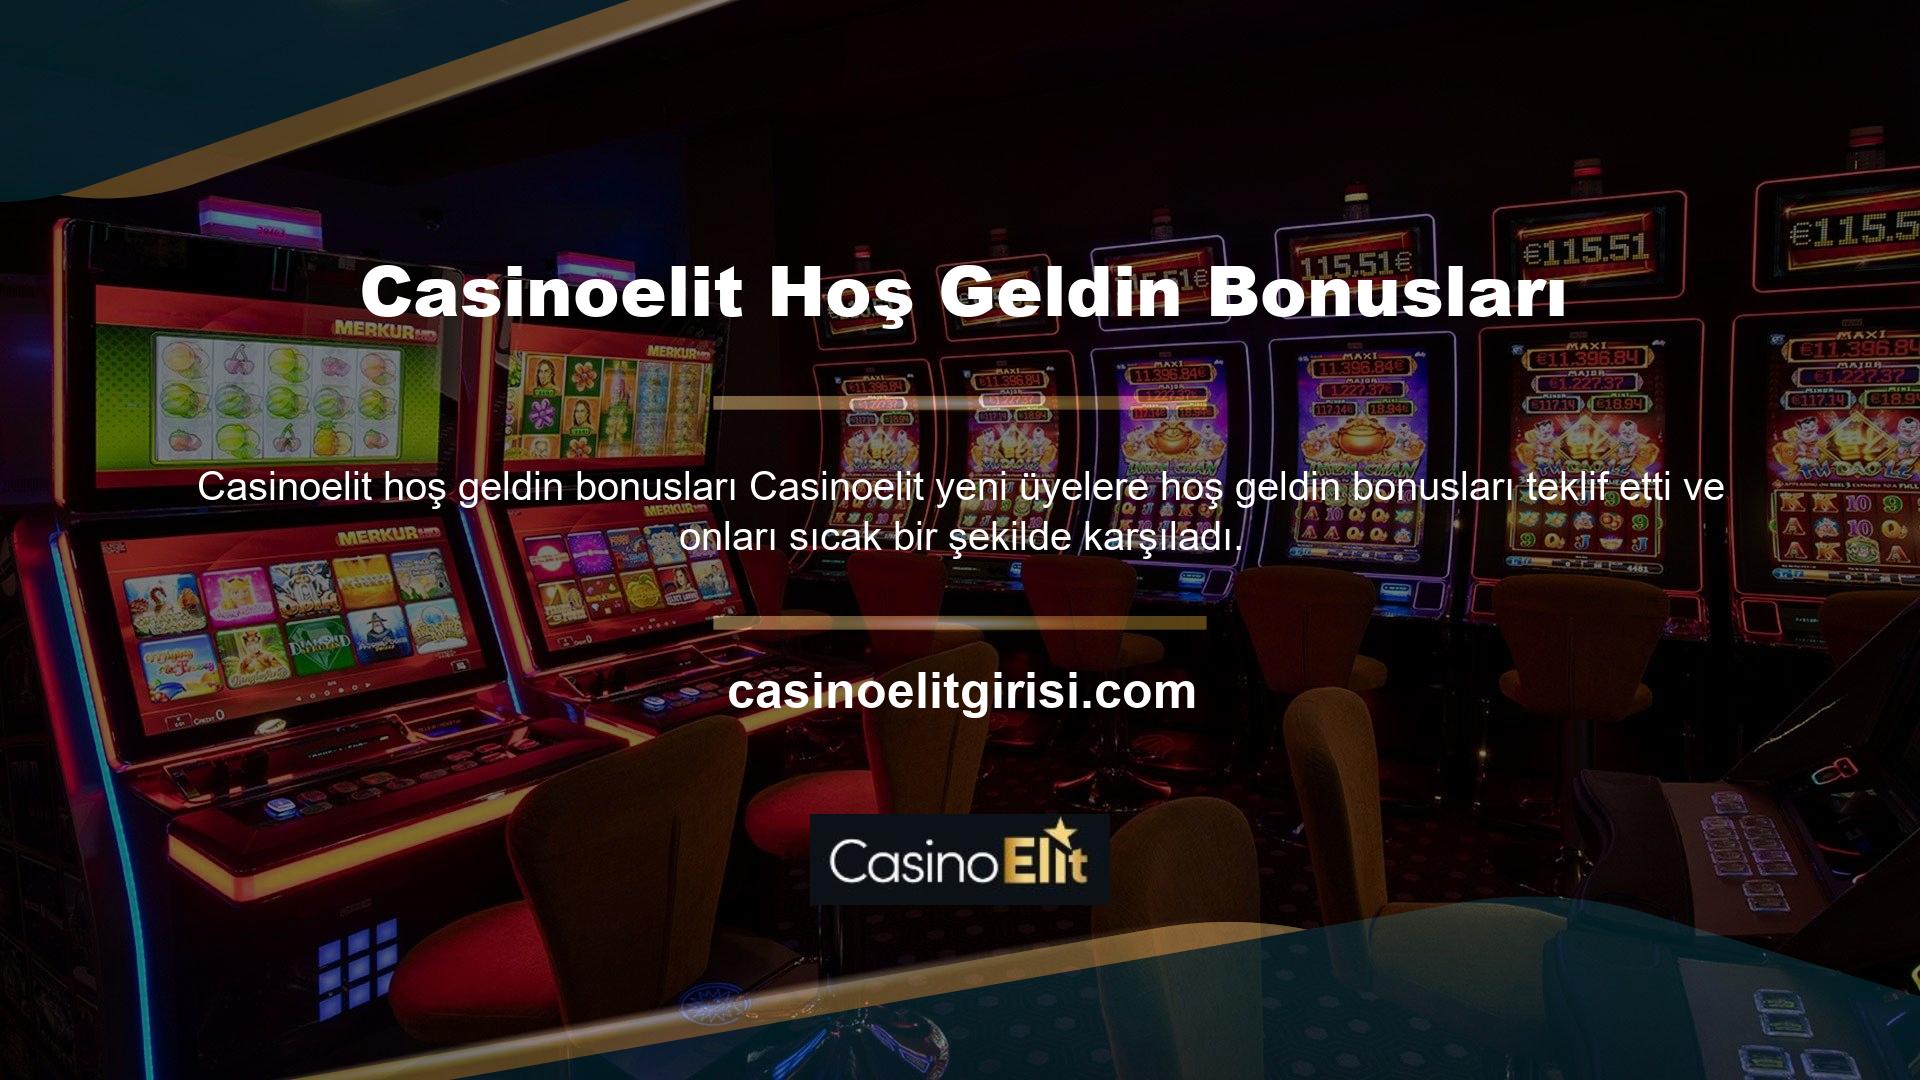 Casinoelit hoş geldin bonusundan yararlanmak için bu siteye ilk defa üye olmanız gerekmektedir